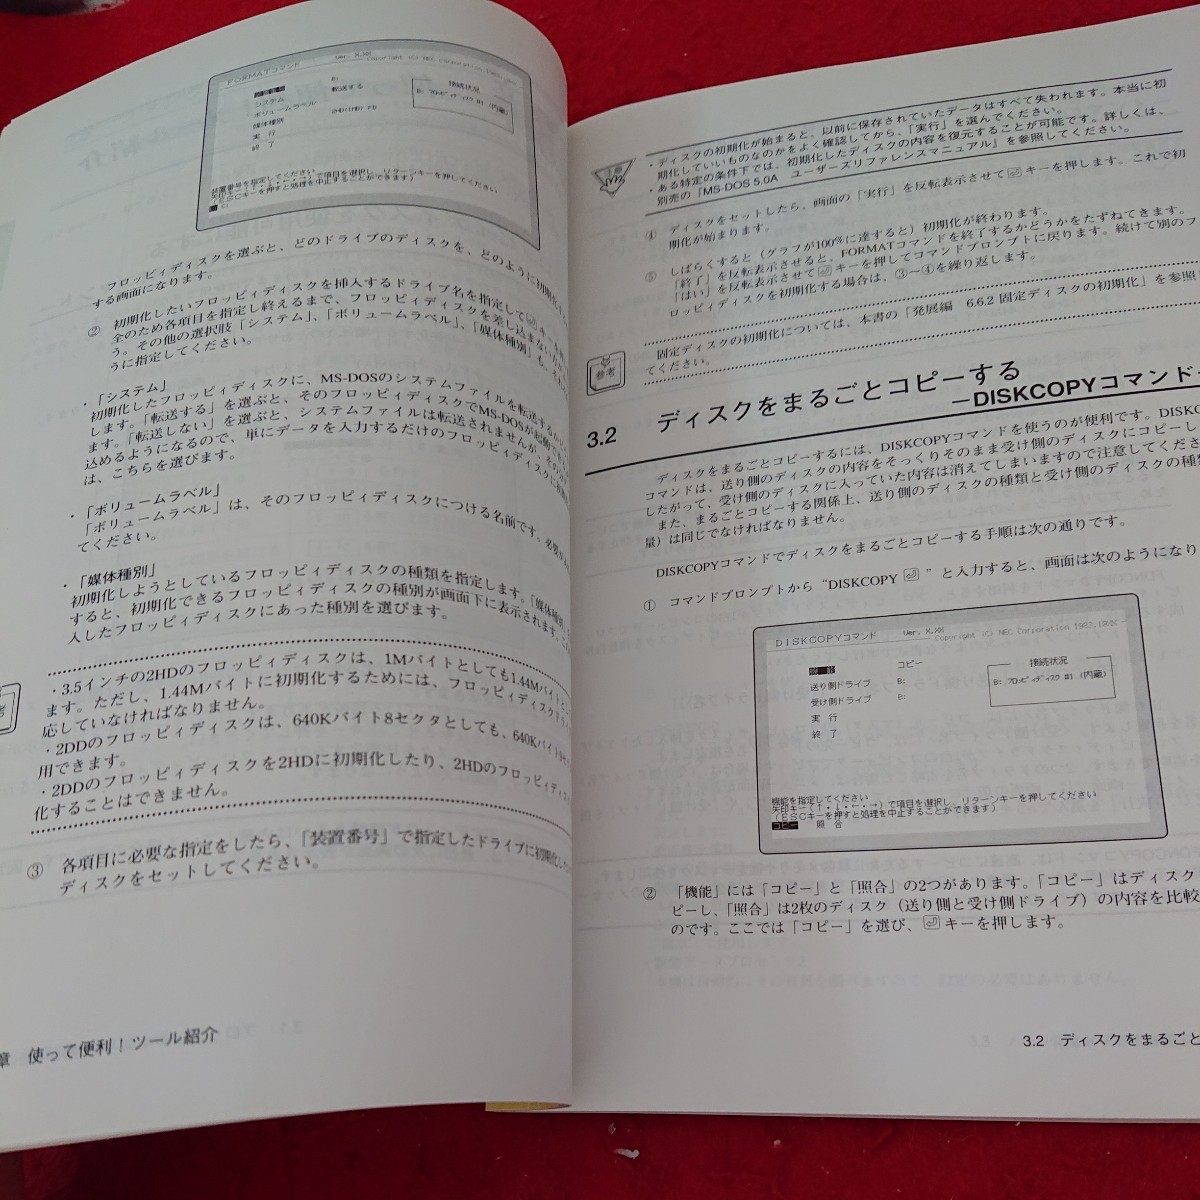 f-453 шея персональный компьютер PC-9800 серии MS-DOS 5.0A-H Quick manual выпуск день неизвестен commando p long pto и т.п. *9